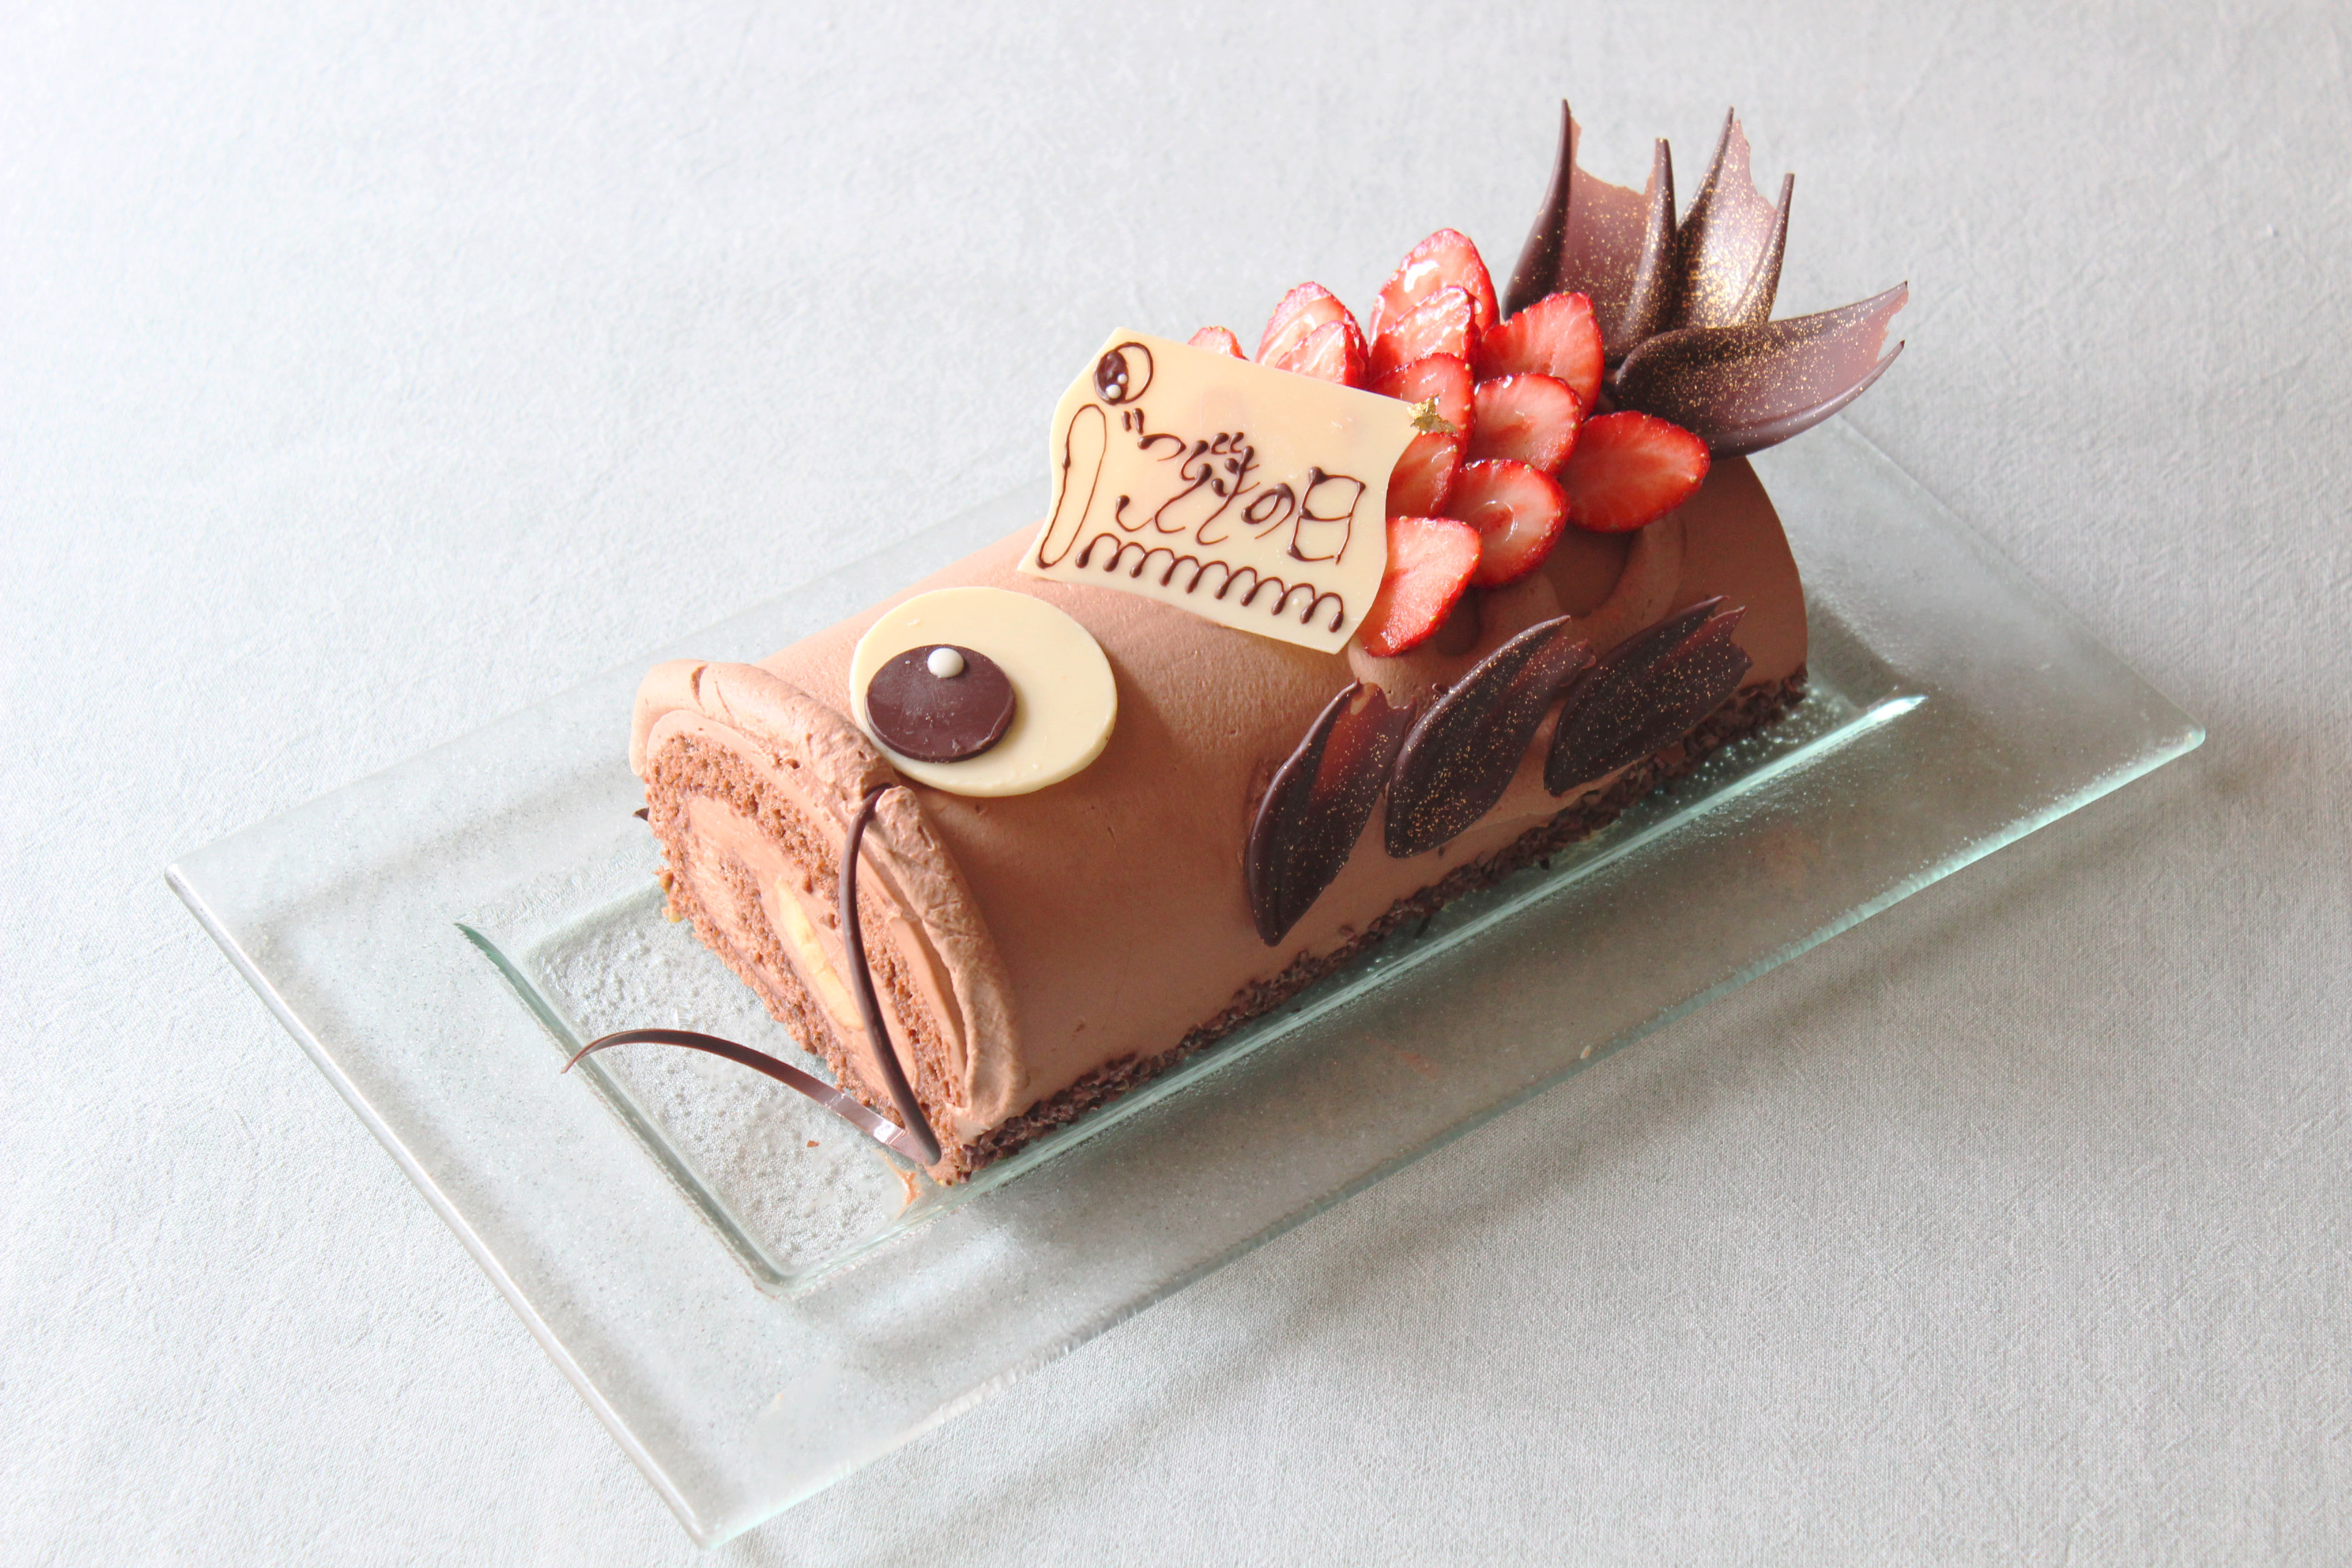 こいのぼりのチョコバナナロールケーキ 販売中 リーガロイヤルホテル東京のプレスリリース